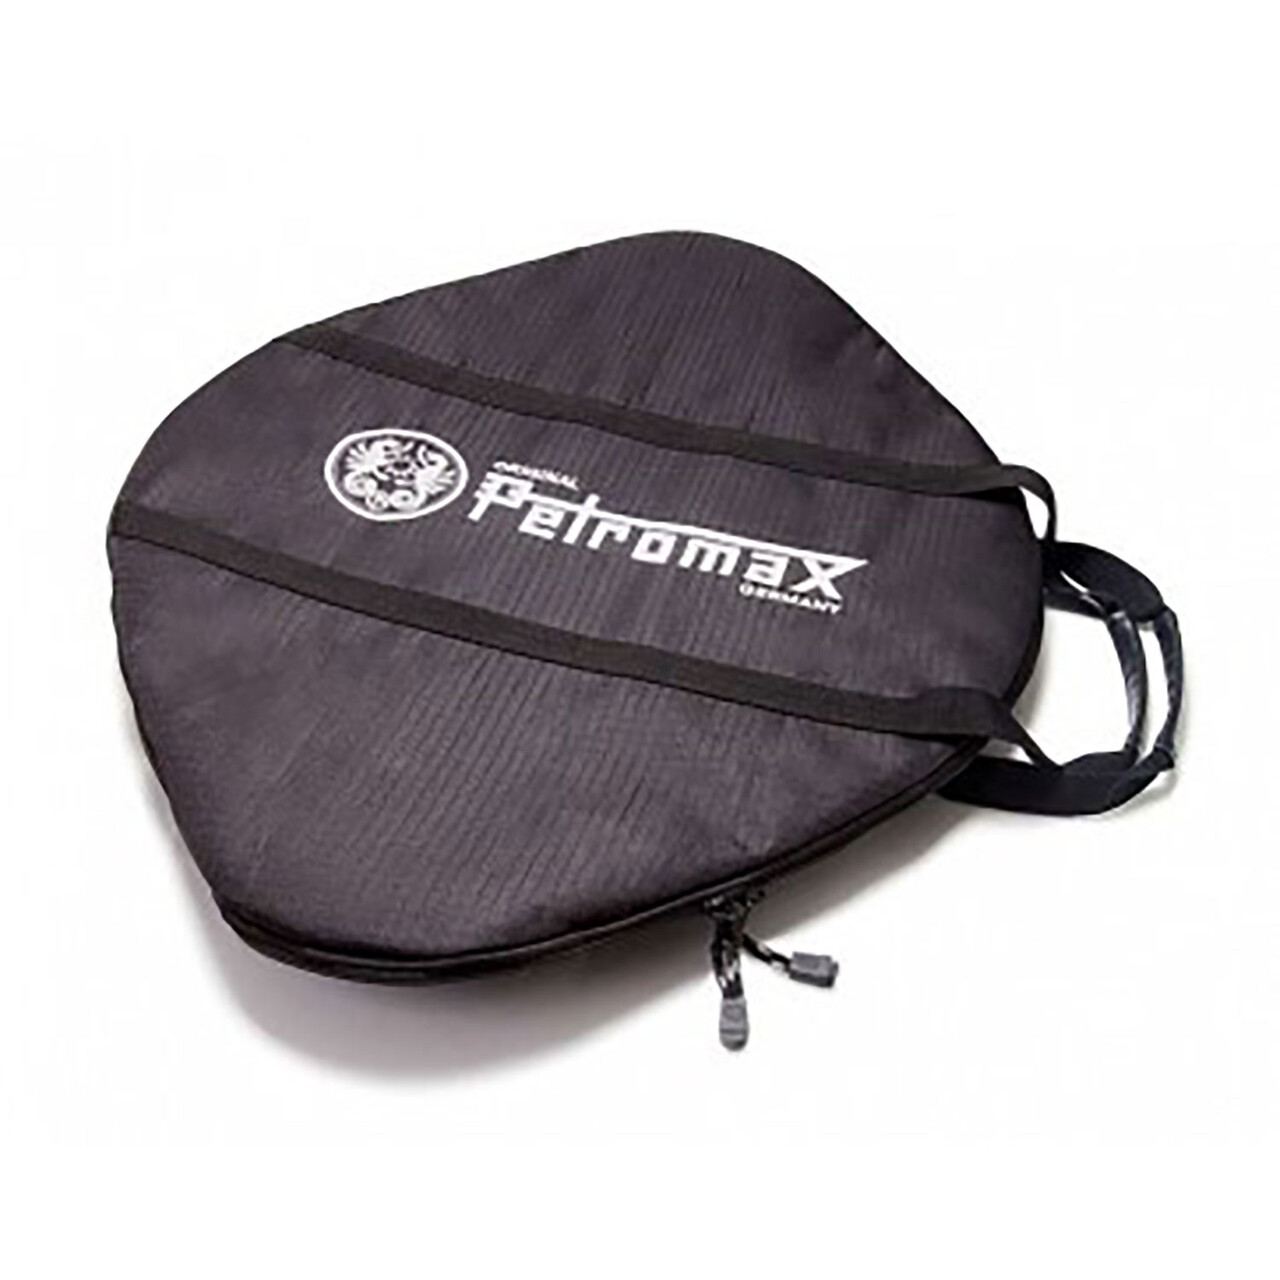 Se Petromax Transport Bag For Griddle And Fire Bowl - Taske hos Friluftsland.dk